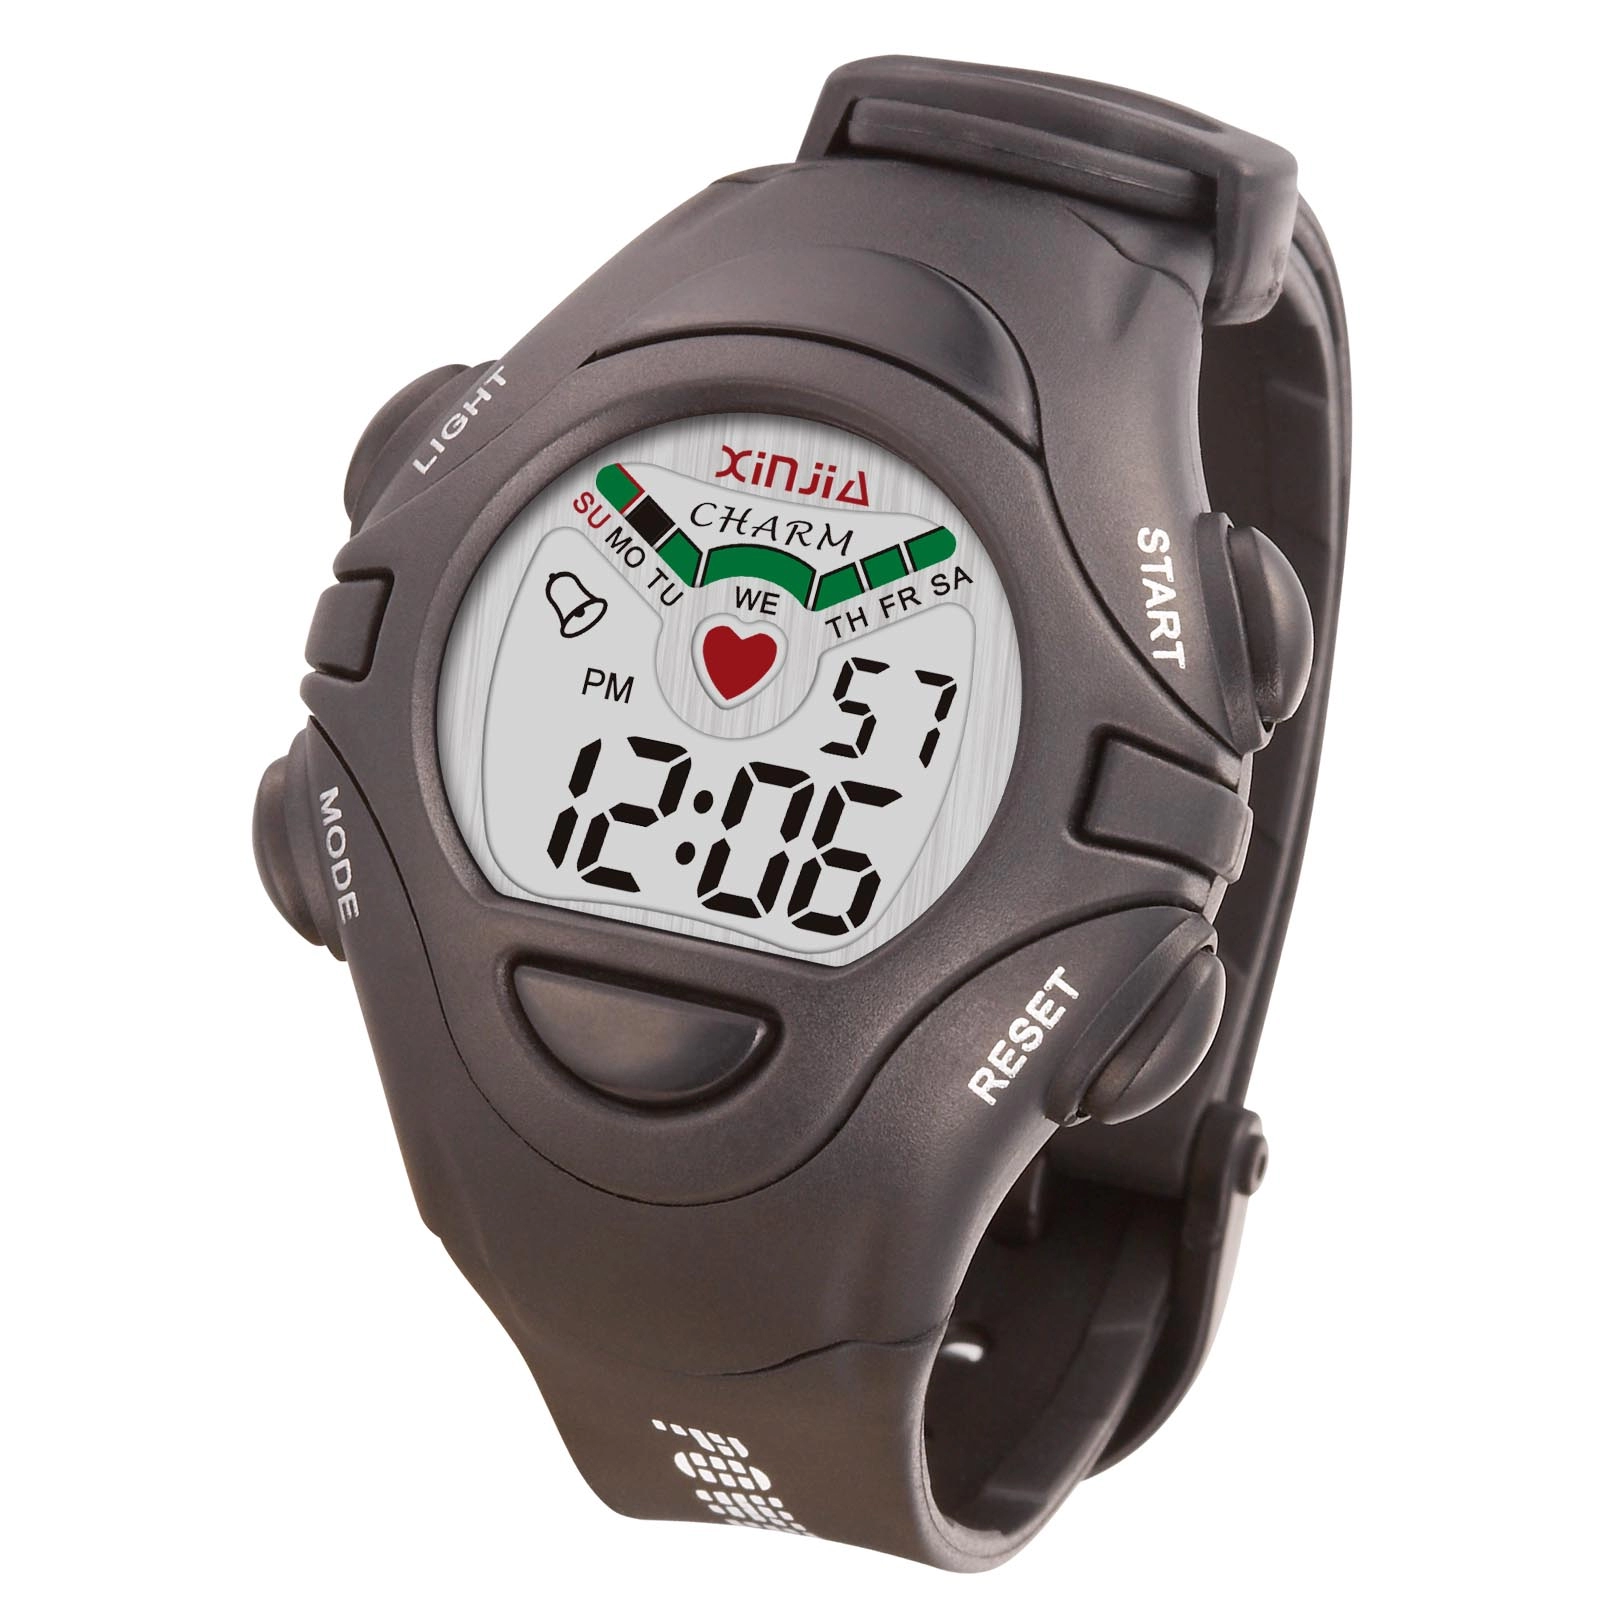 Relay Of Love Digital Water Resistant Wrist Watch